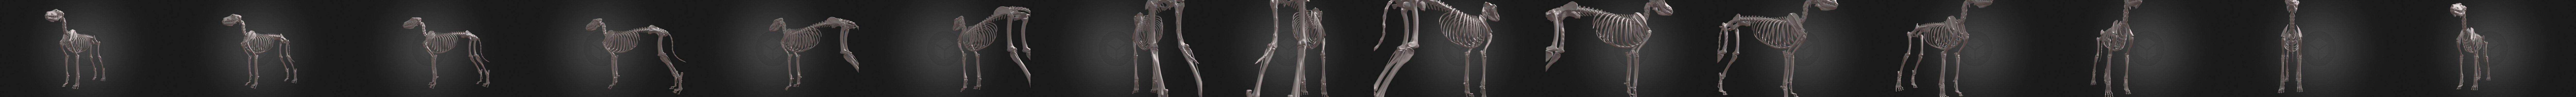 Dog skeleton - (Dog skeleton) 3D Printing Model - Threeding